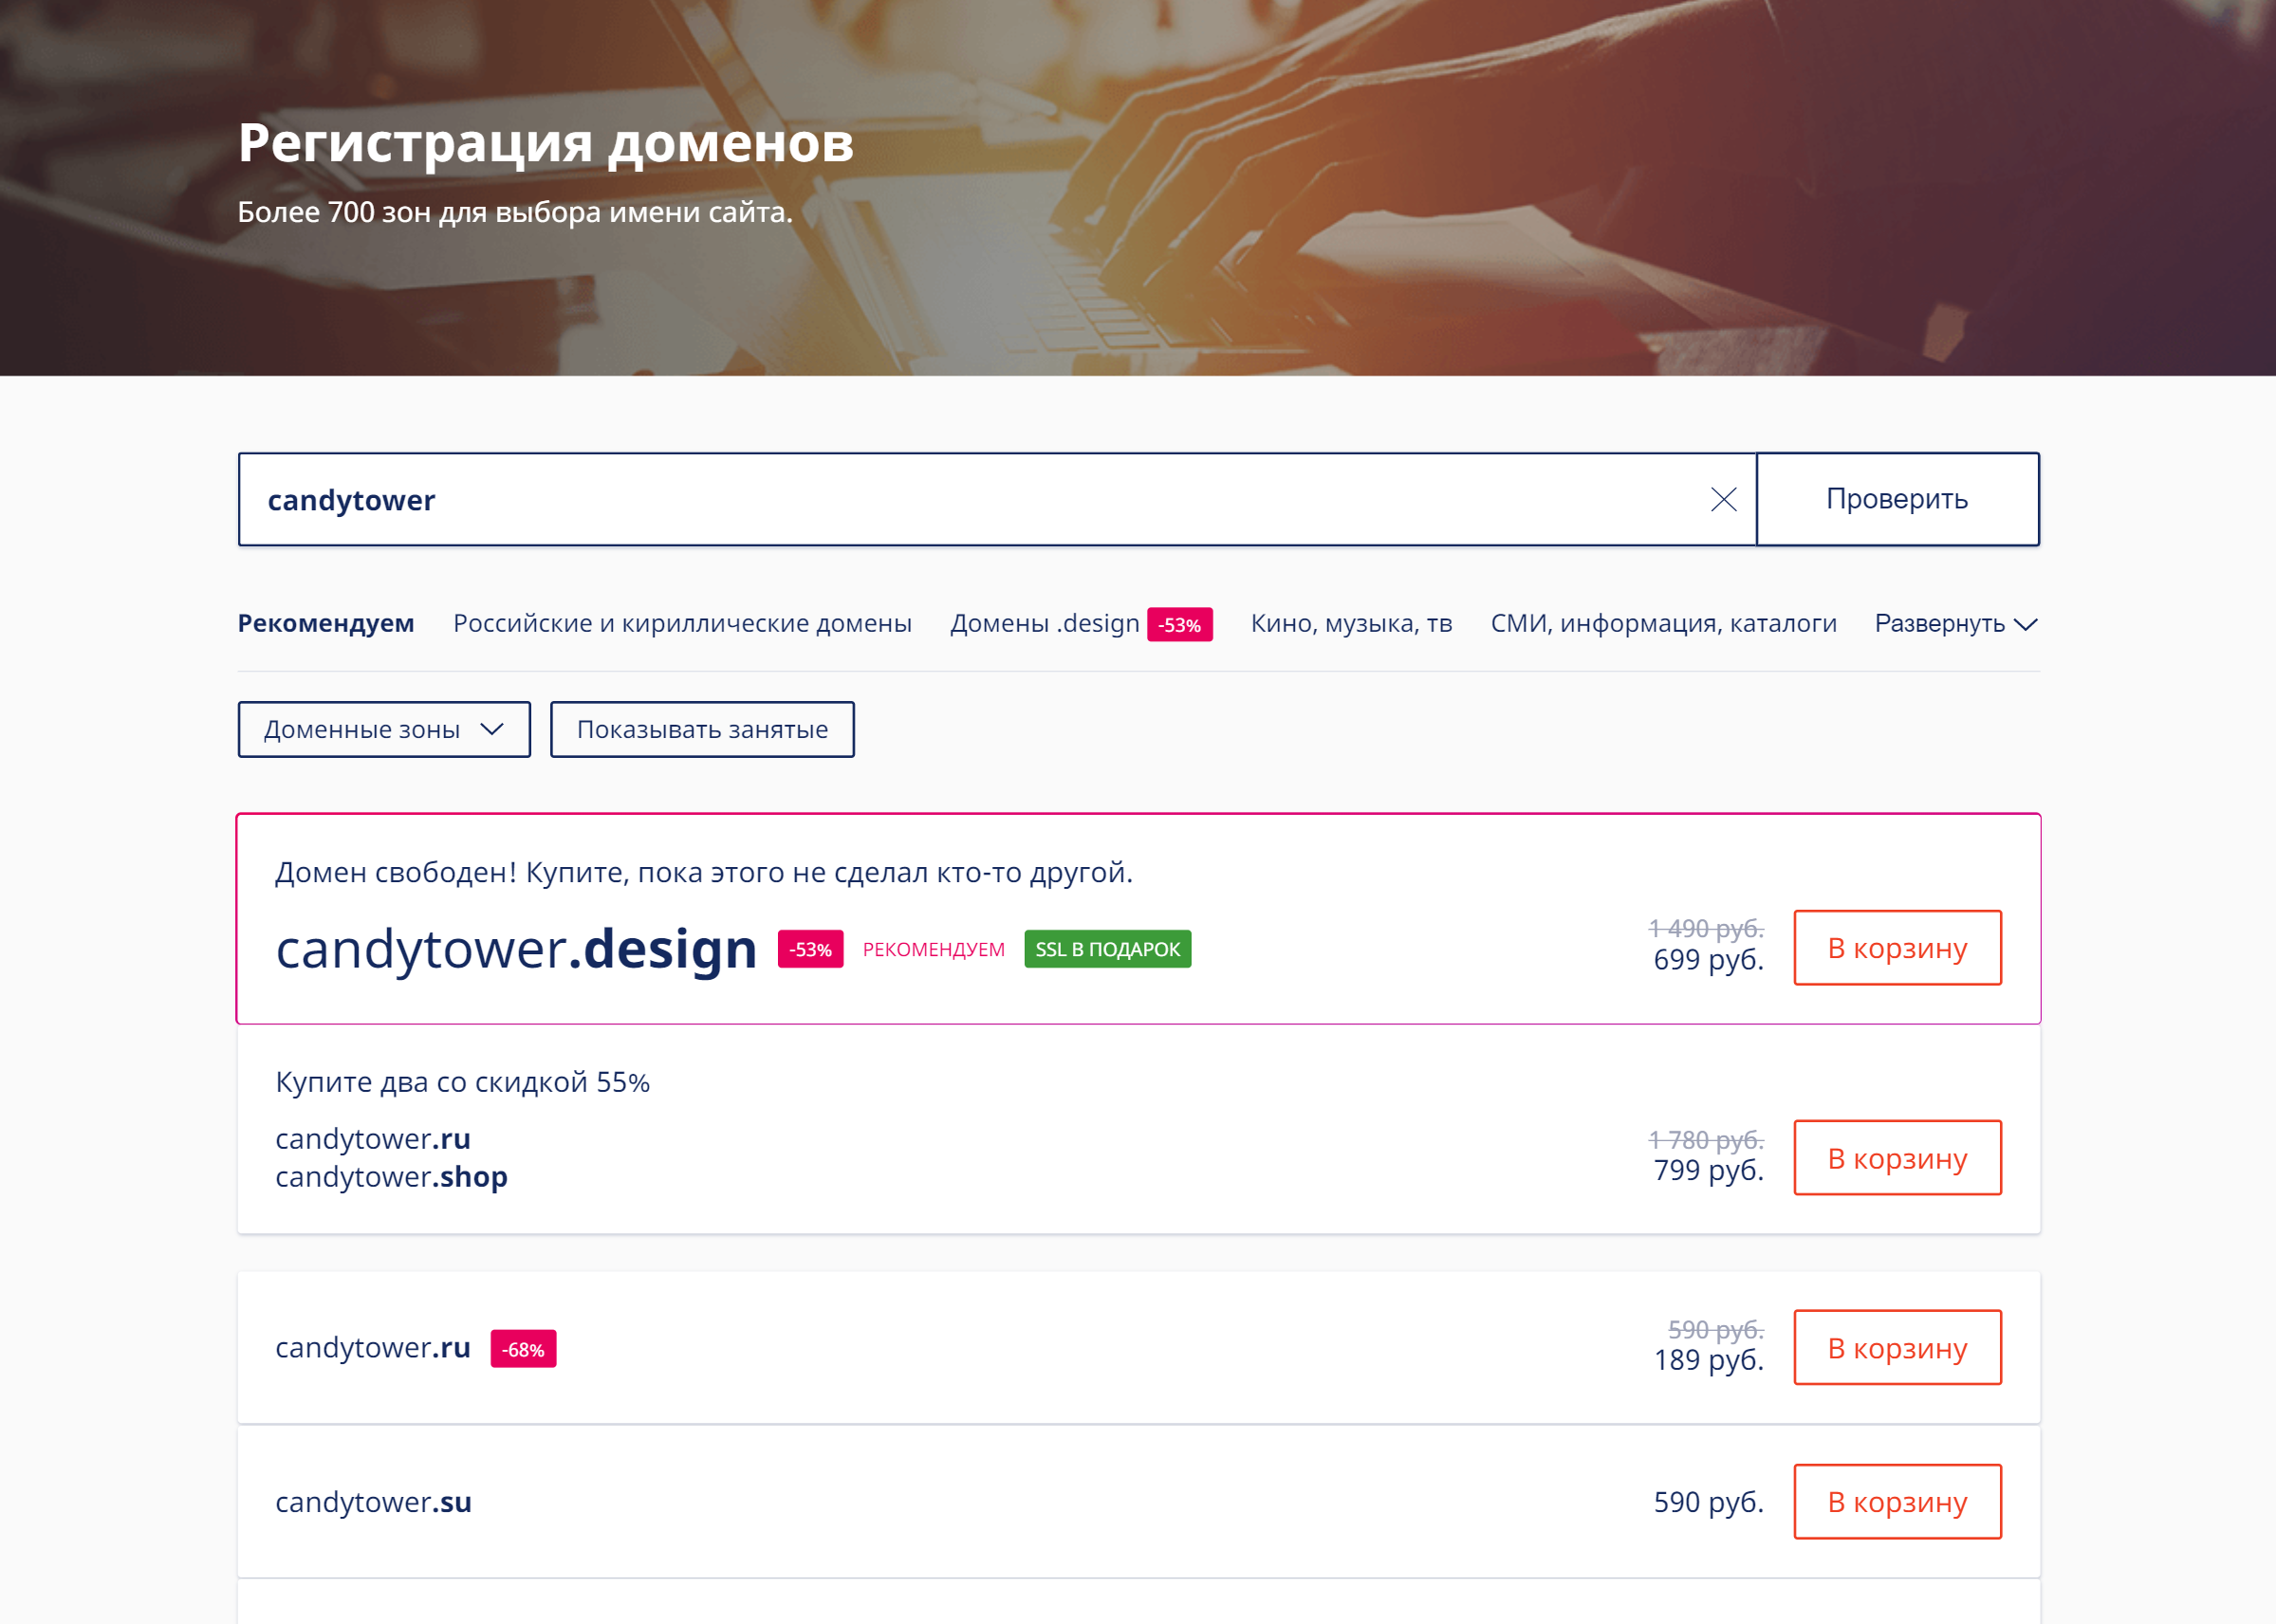 Вбиваю предполагаемое название домена в поисковую строку. Домен «candytower.ru» свободен для регистрации — его можно купить